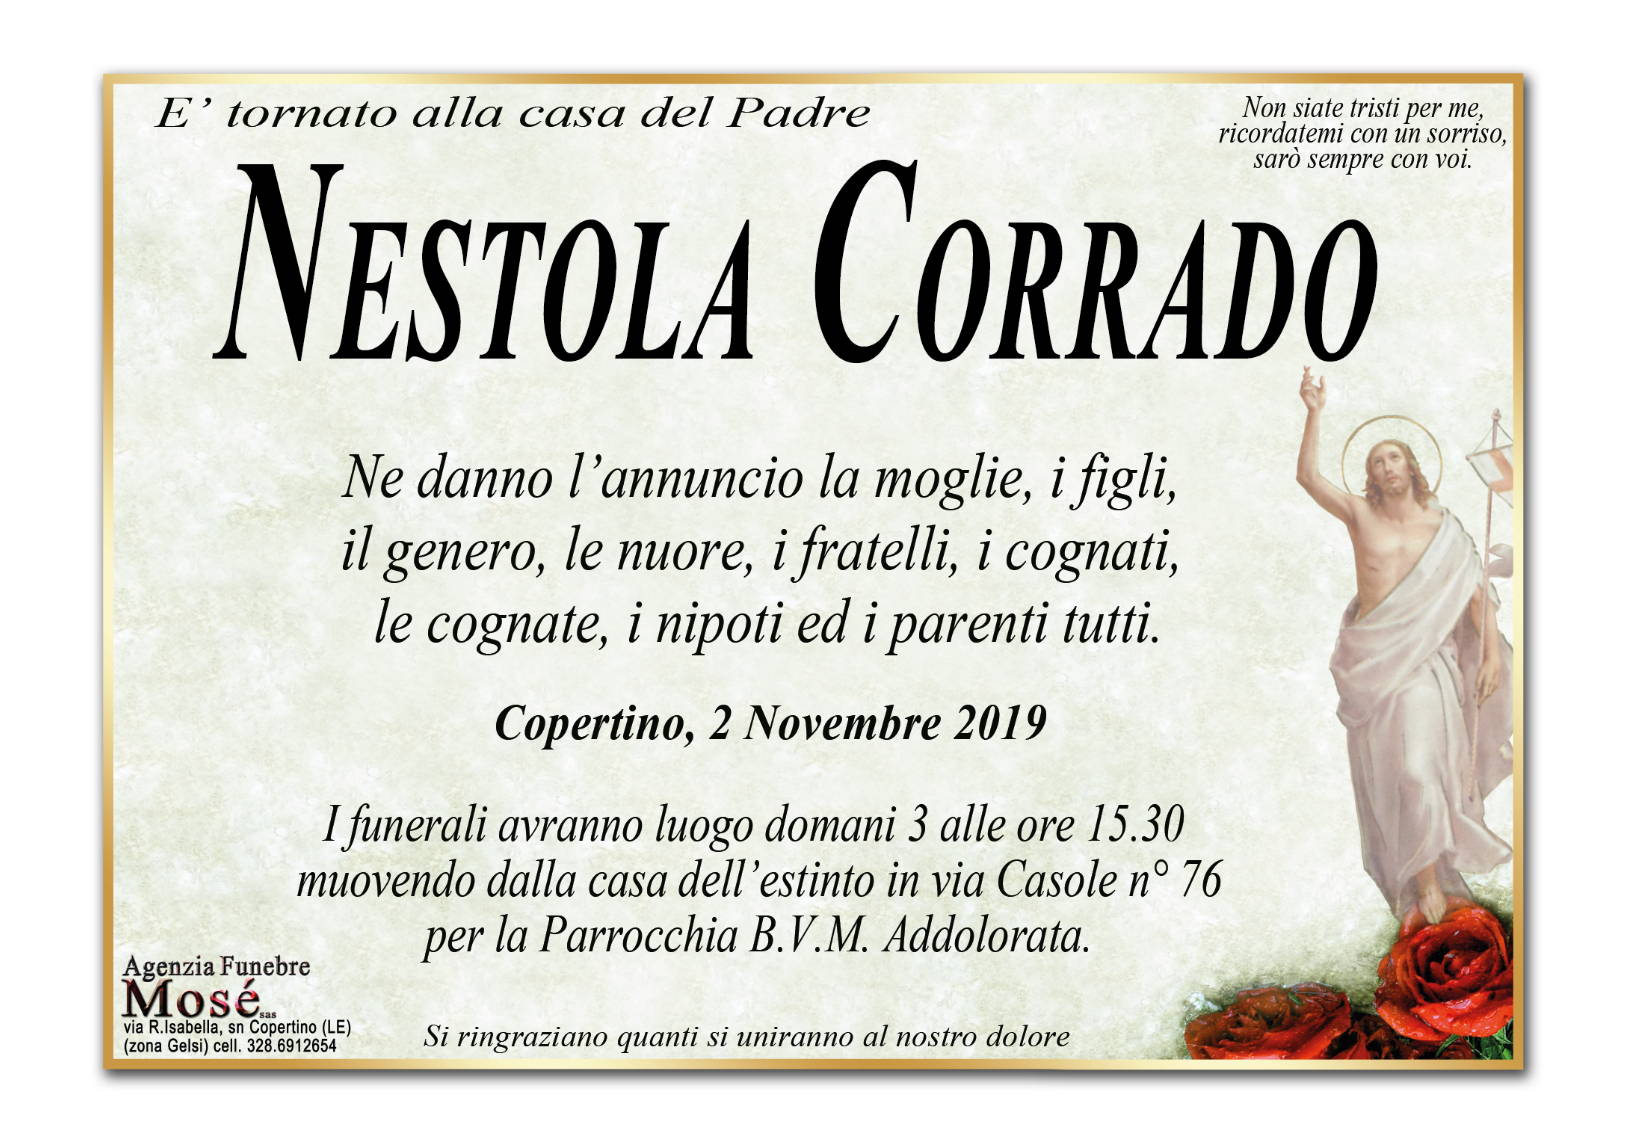 Corrado Nestola